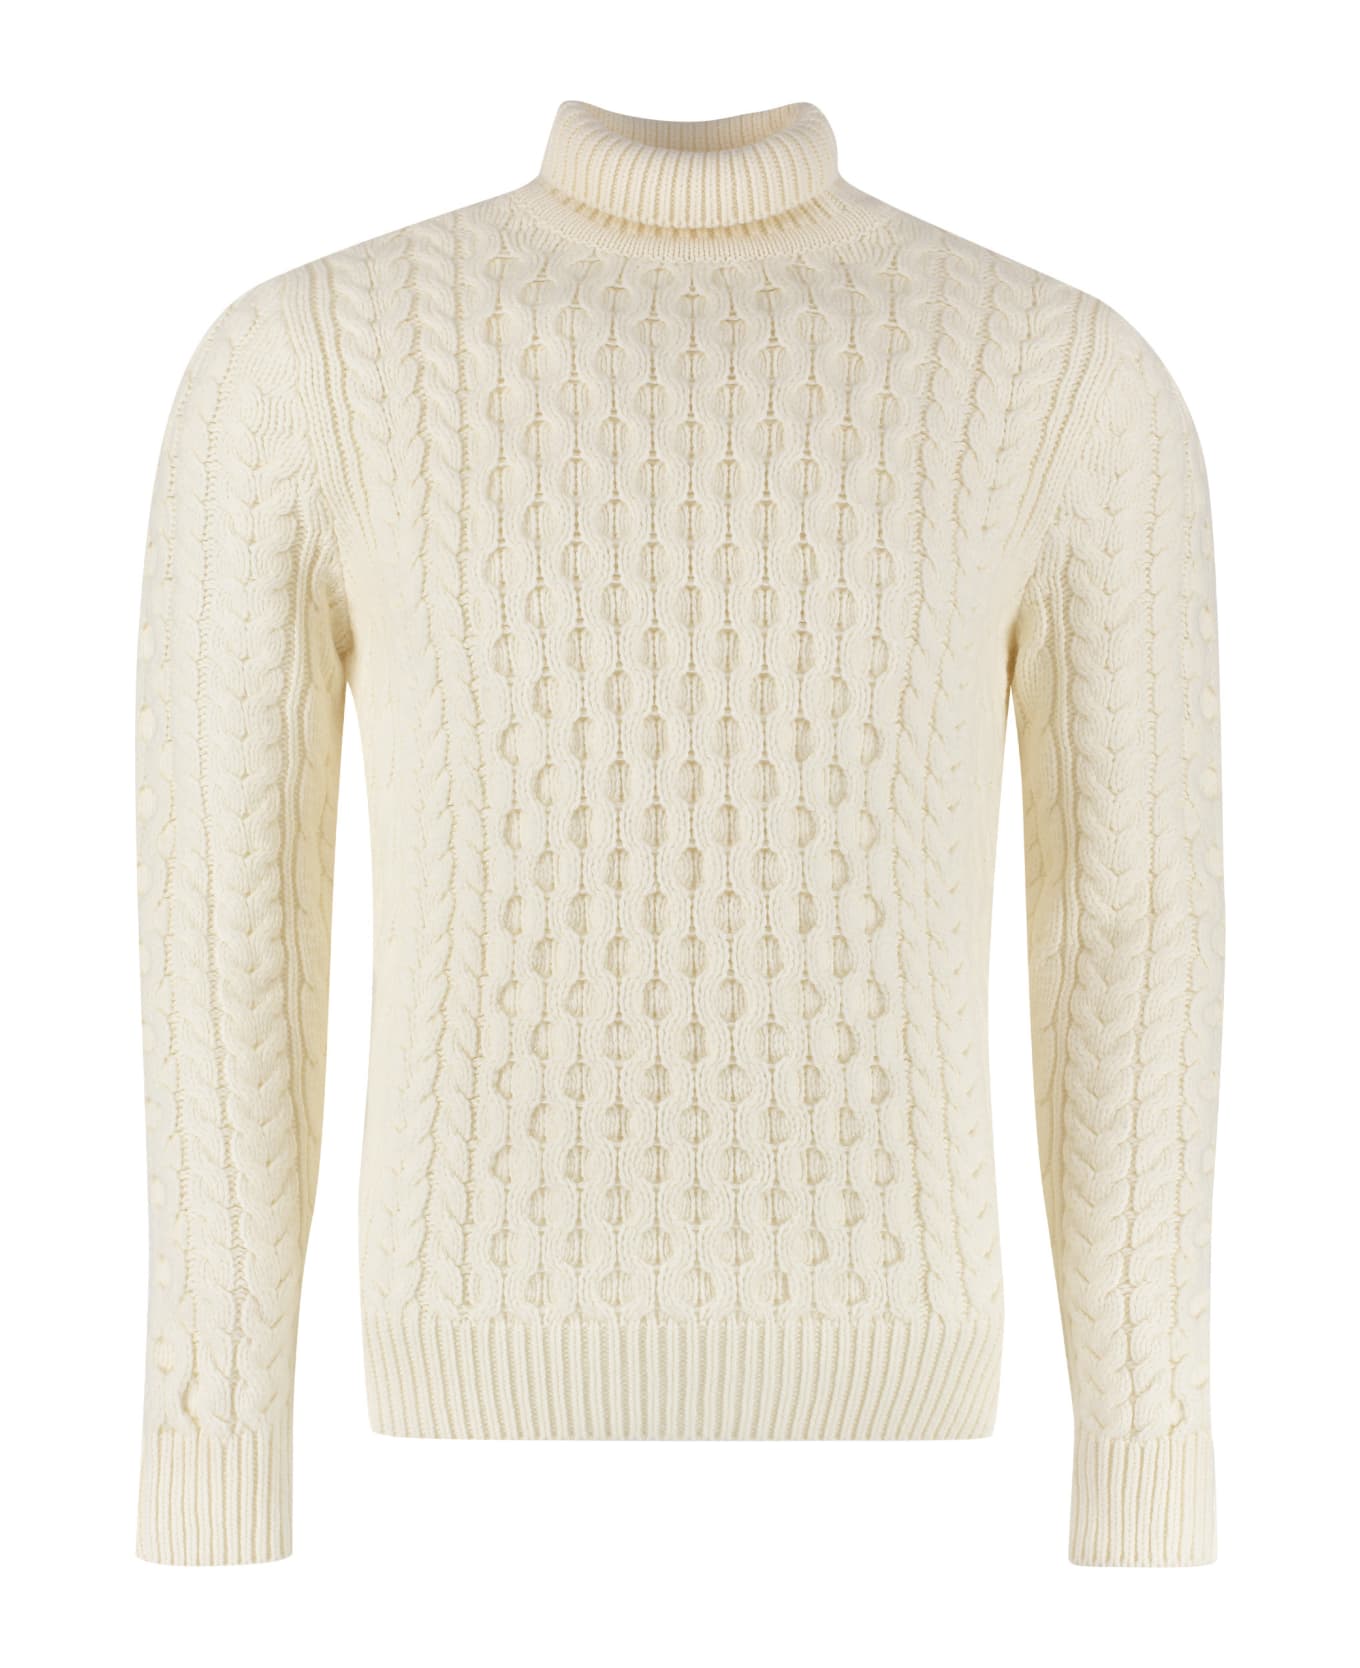 Alexander McQueen Wool Turtleneck Sweater - Ivory